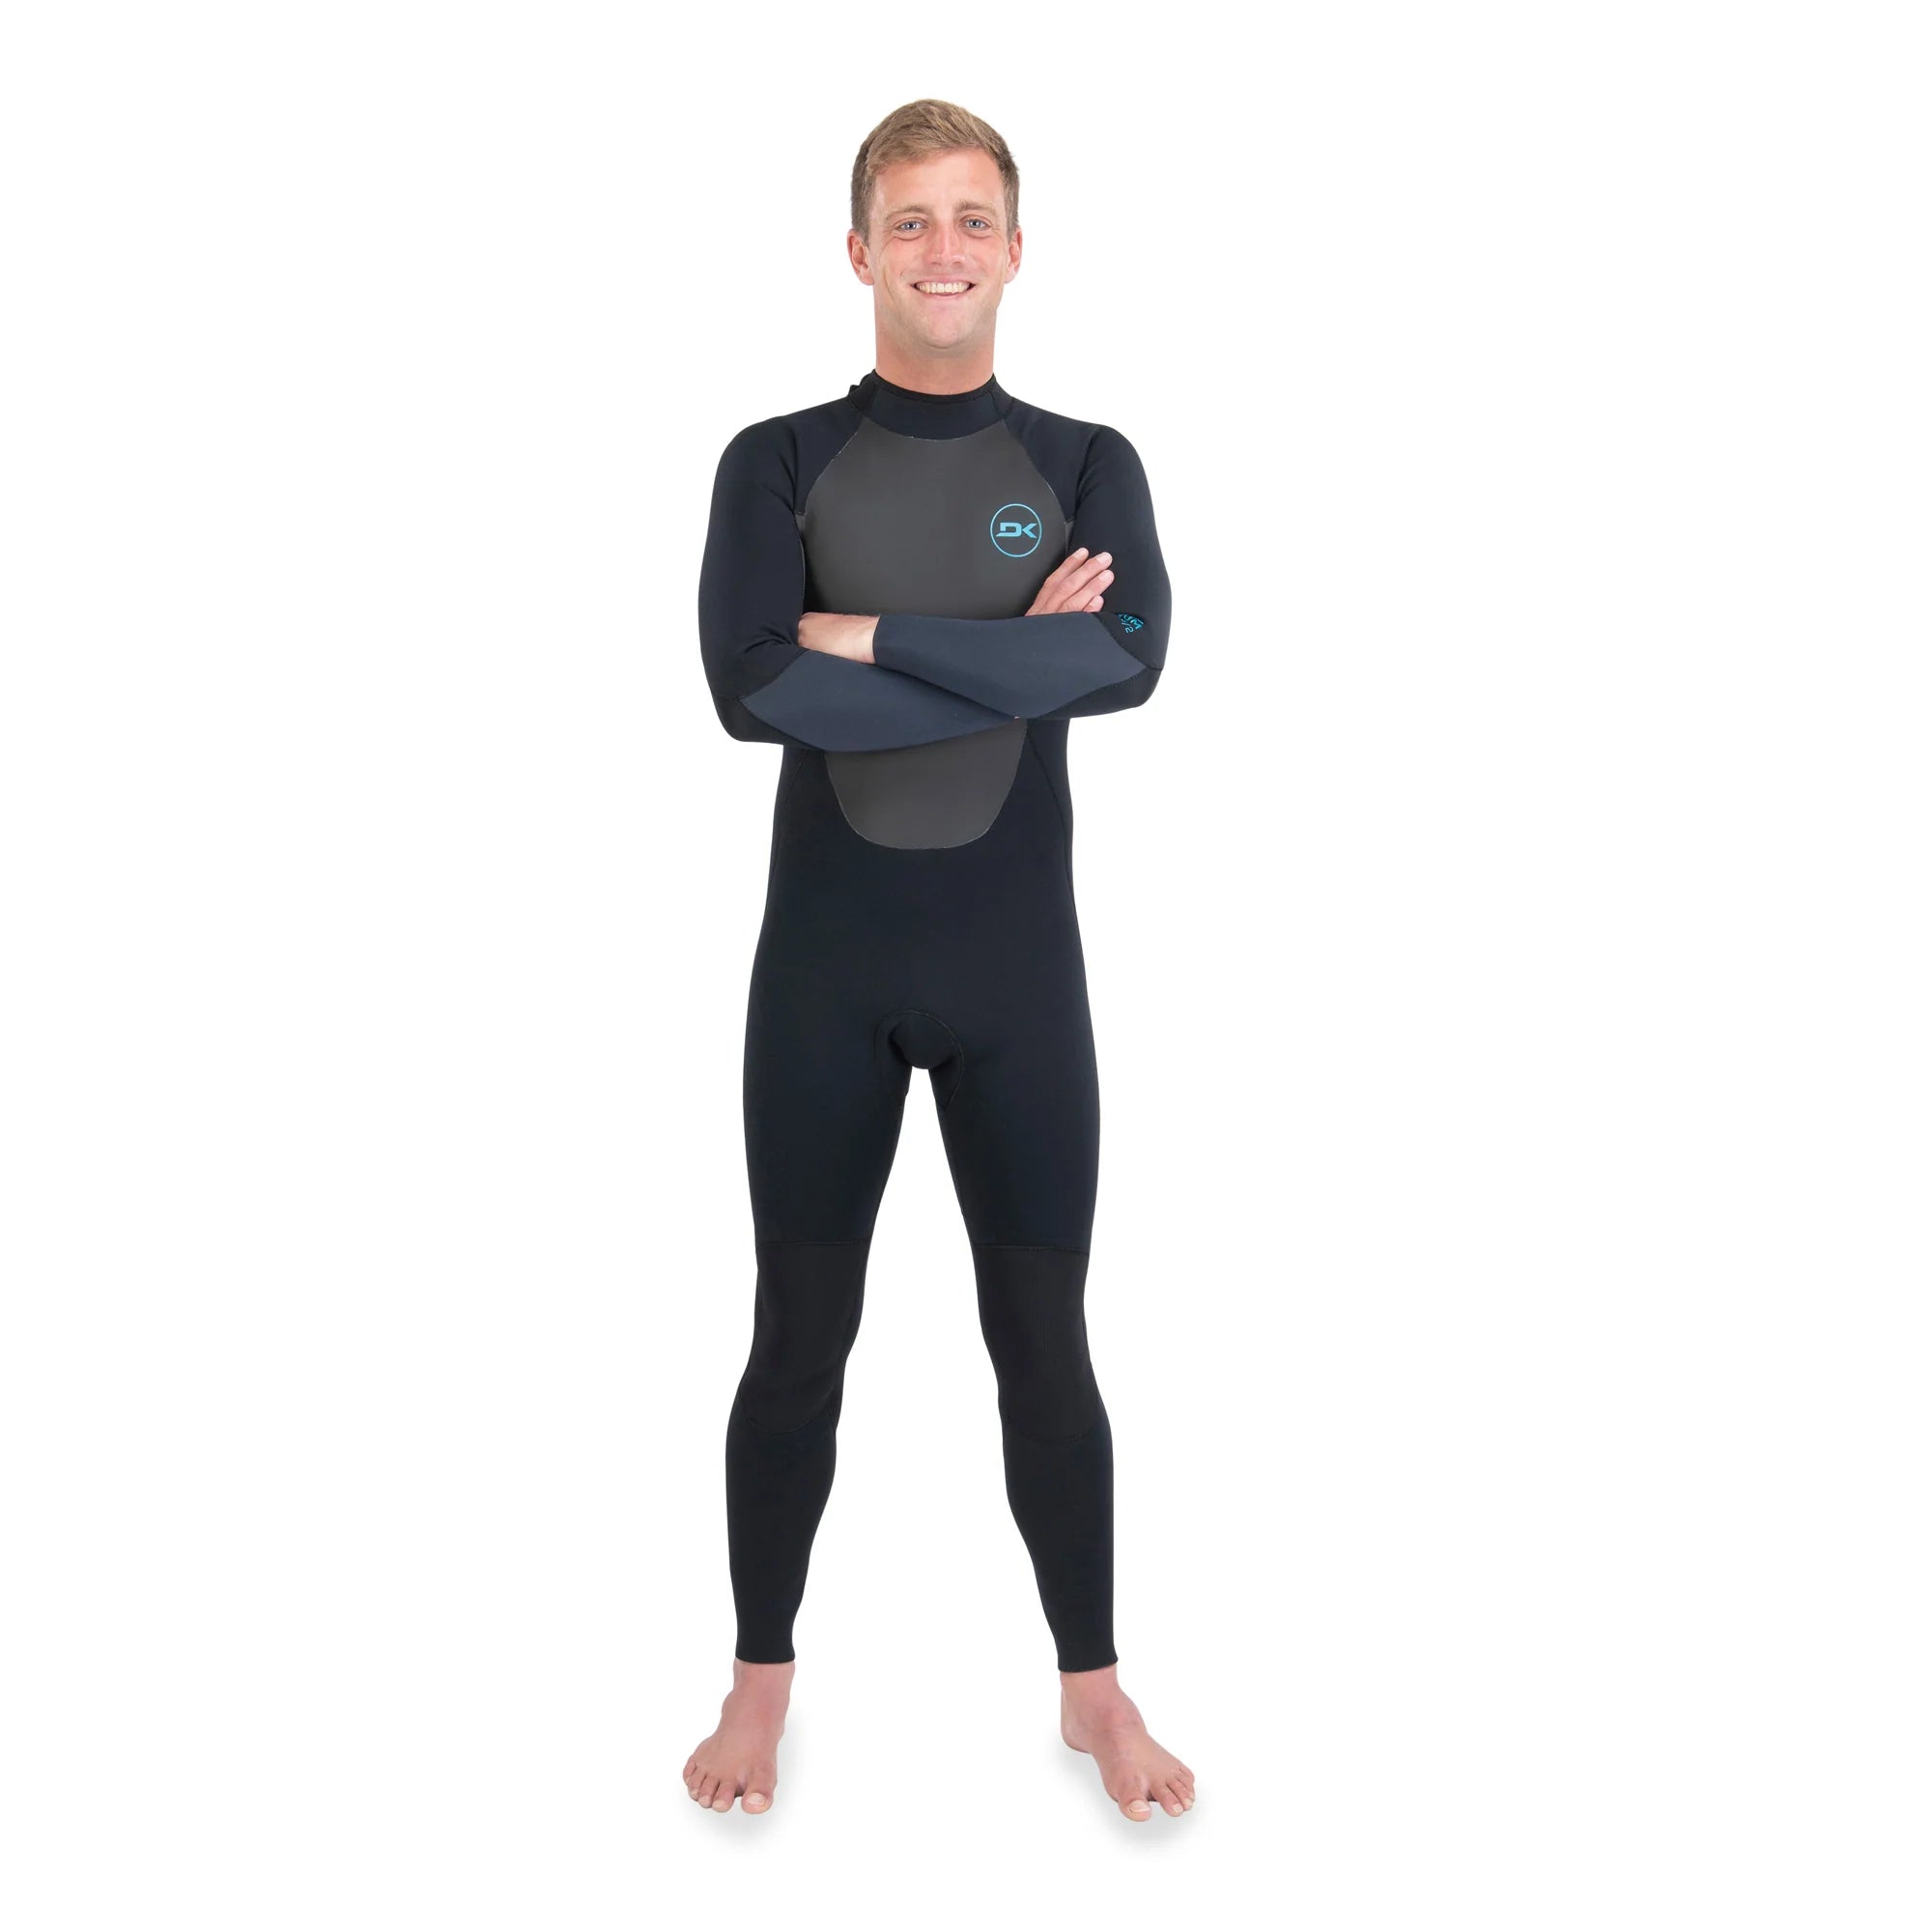 NP Surf Mission 4/3 Back Zip Wet suit